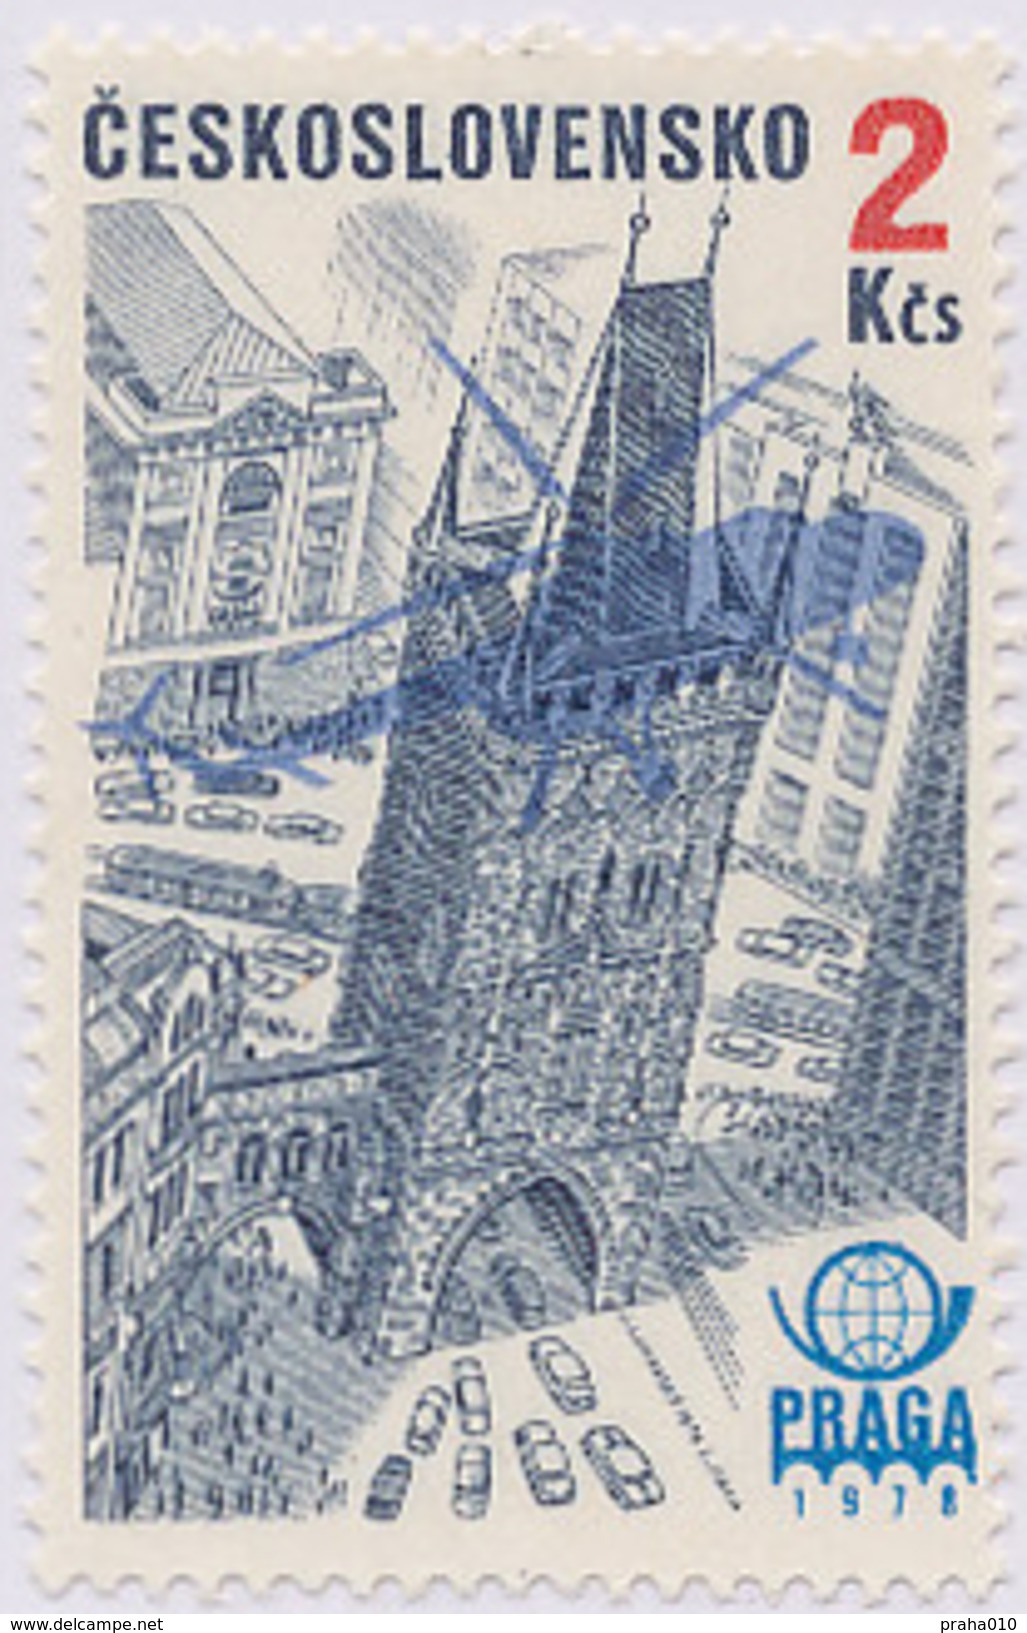 Czechoslovakia / Stamps (1976) L0082 (Air Mail Stamp): PRAGA 78 (Prague, Powder Tower); Painter: J. Lukavsky - Hubschrauber